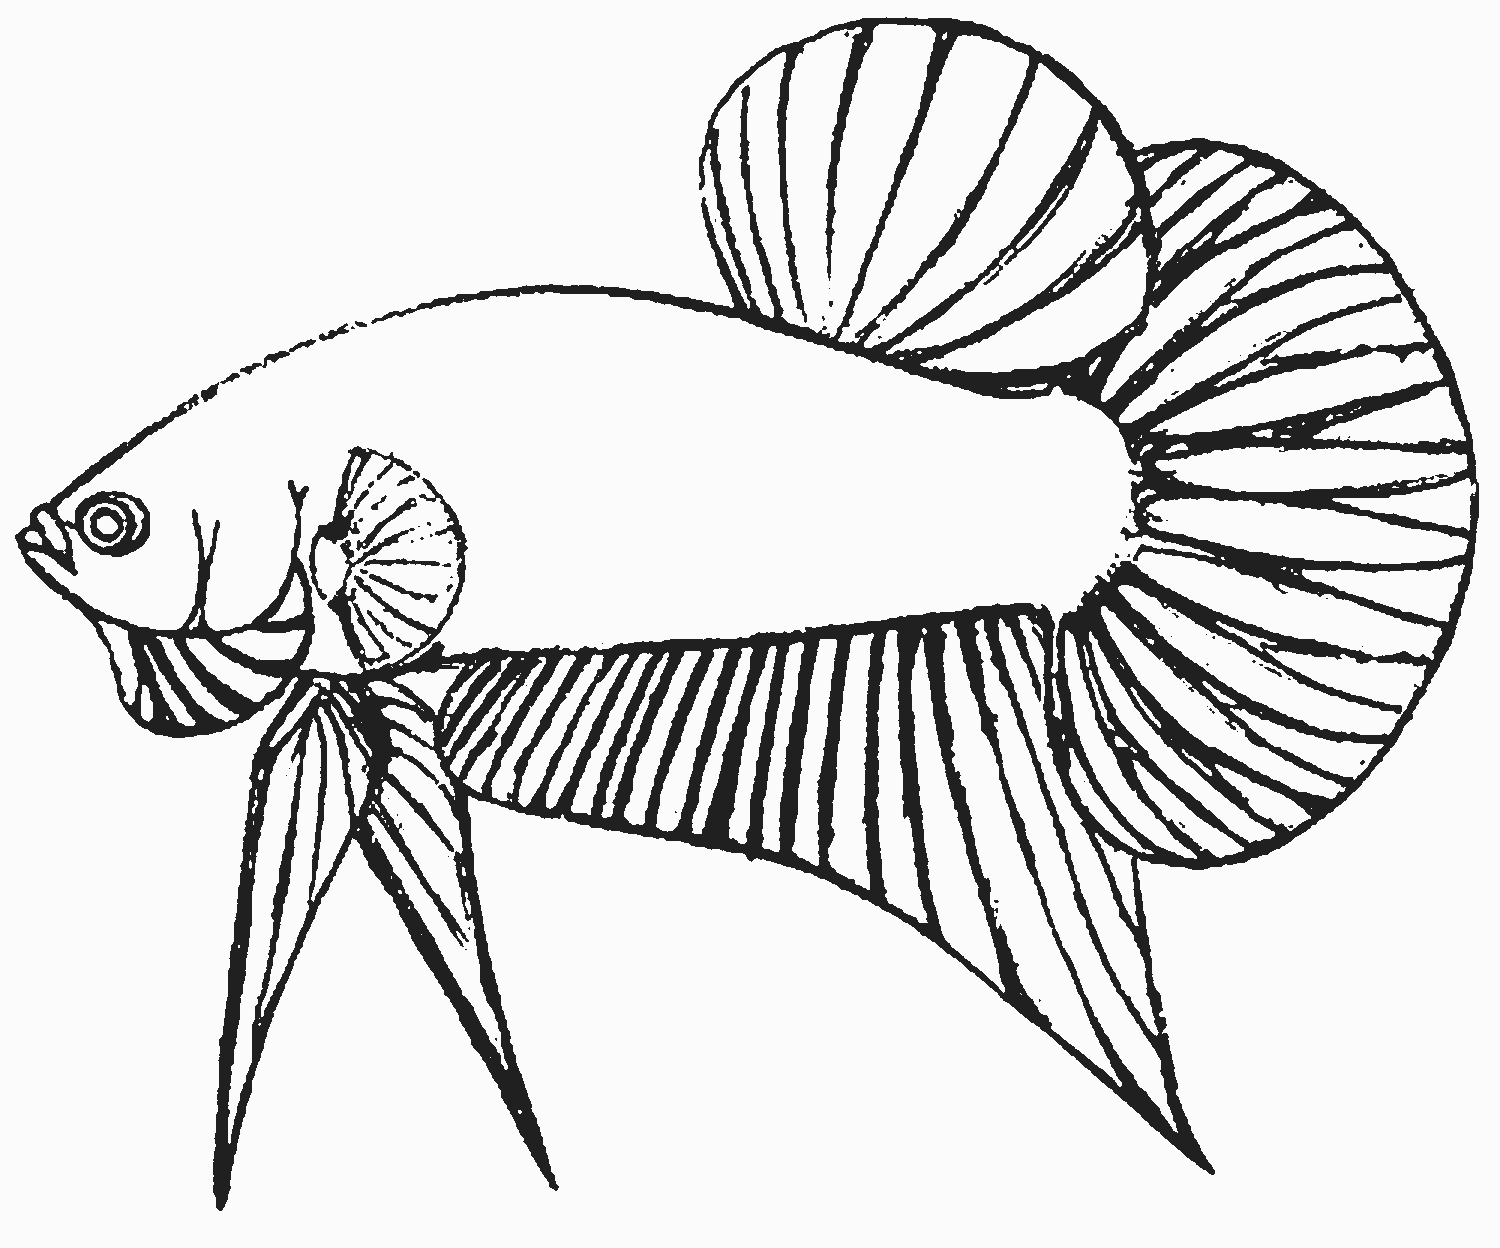 Contoh Sketsa Gambar Ikan Corned Wall